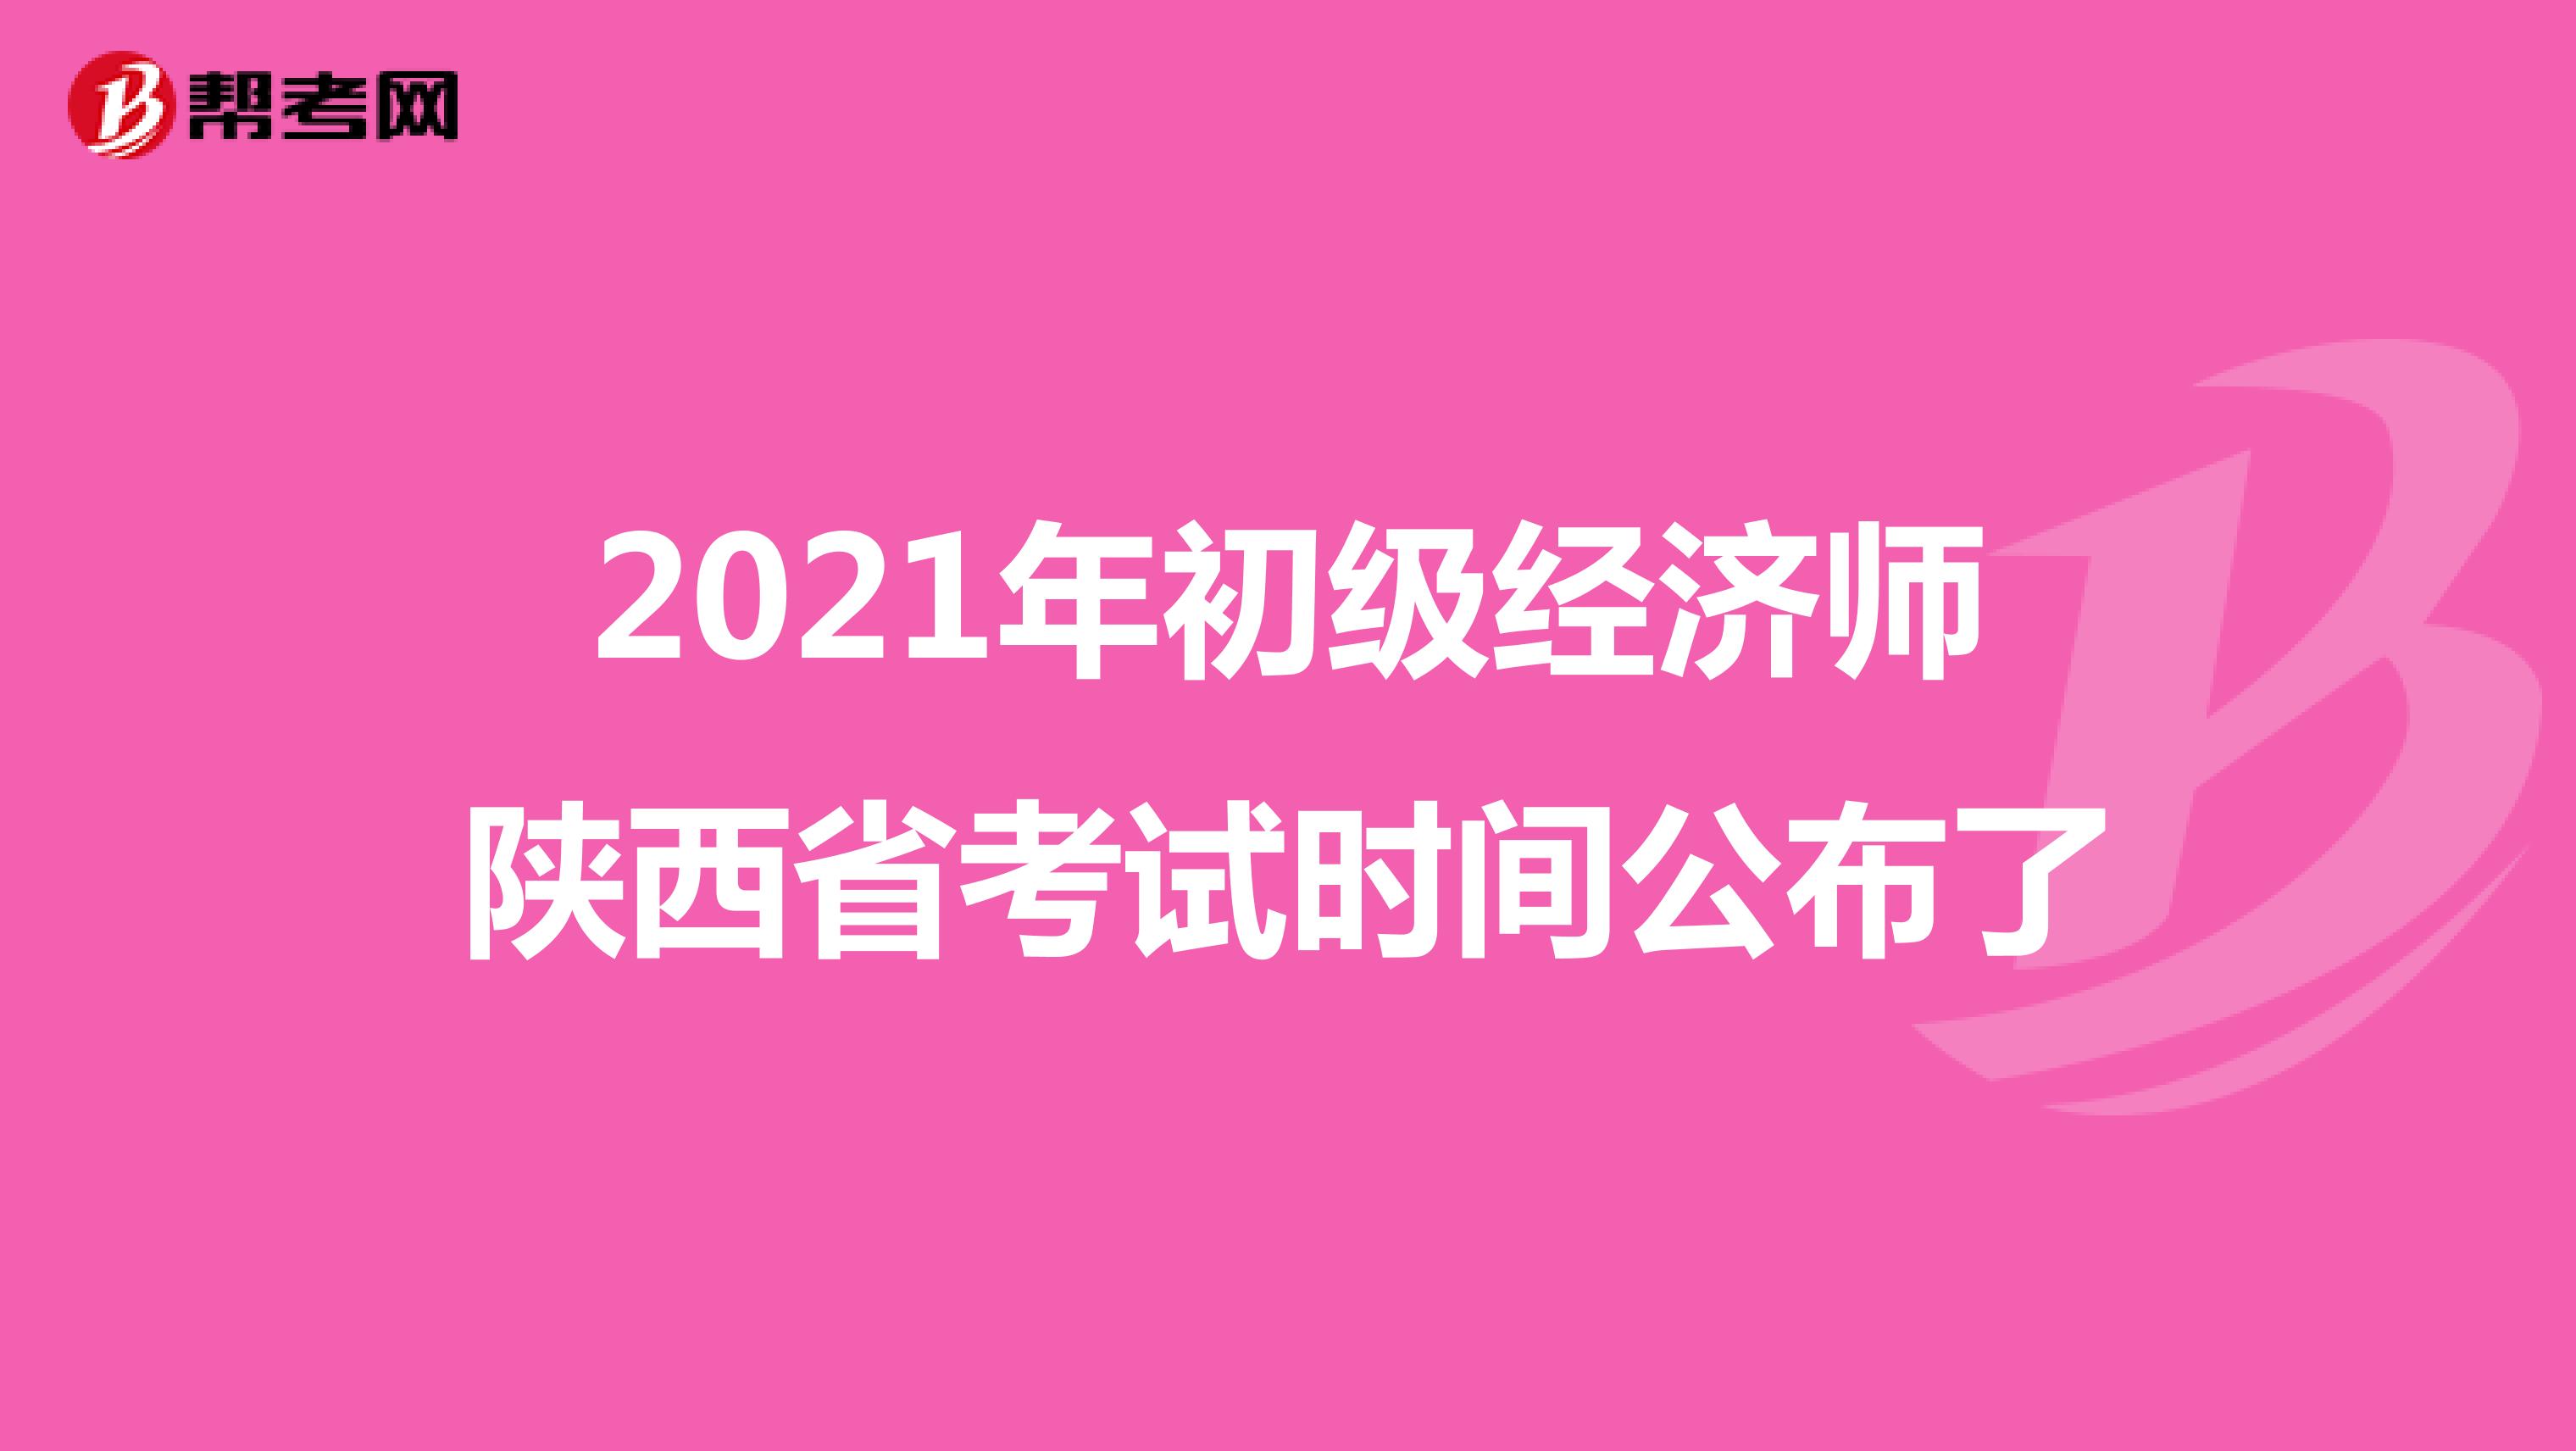 2021年初级经济师陕西省考试时间公布了